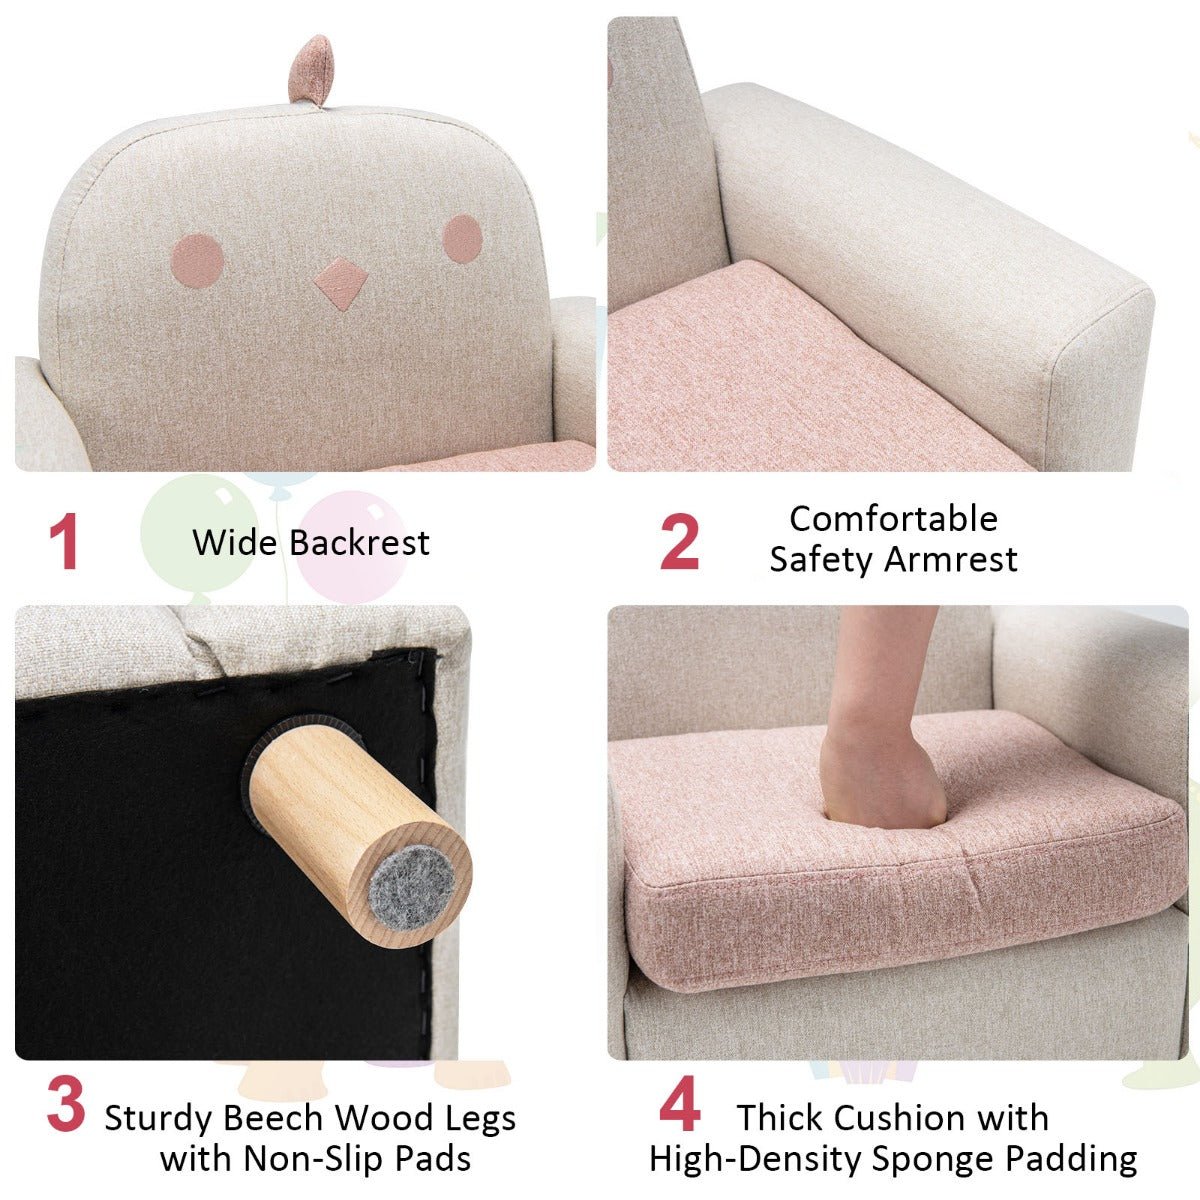 Kids Sofa Chair: Wooden Armrest, Thick Cushion, Beech Legs - Embrace Coziness